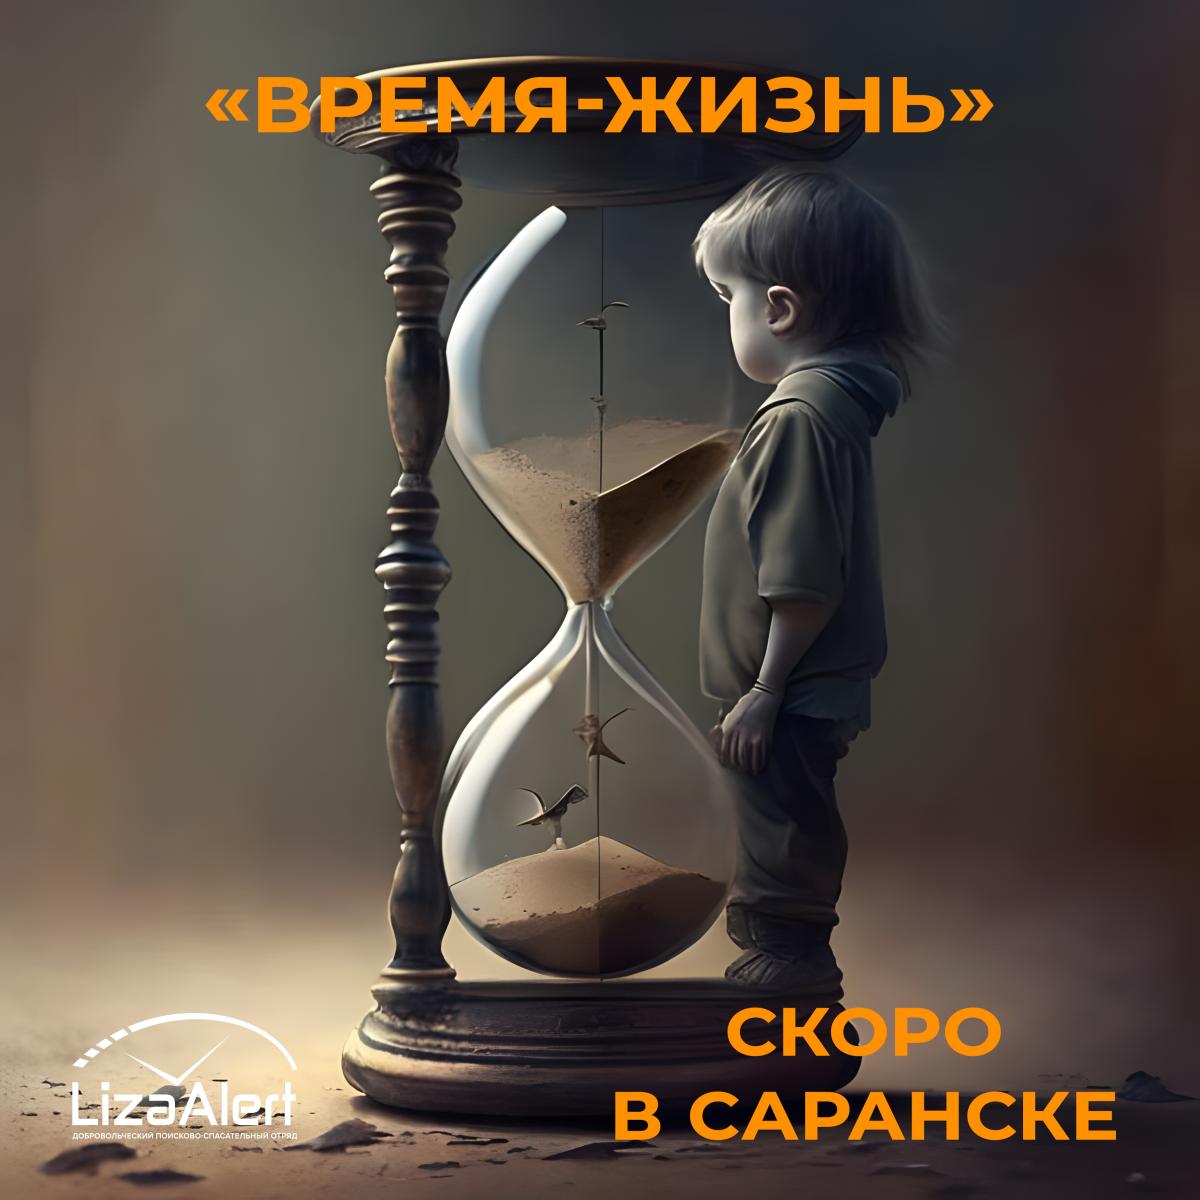 Info RM: Арт-объект «Время – Жизнь», посвященный пропавшим детям, появится  в Мордовии